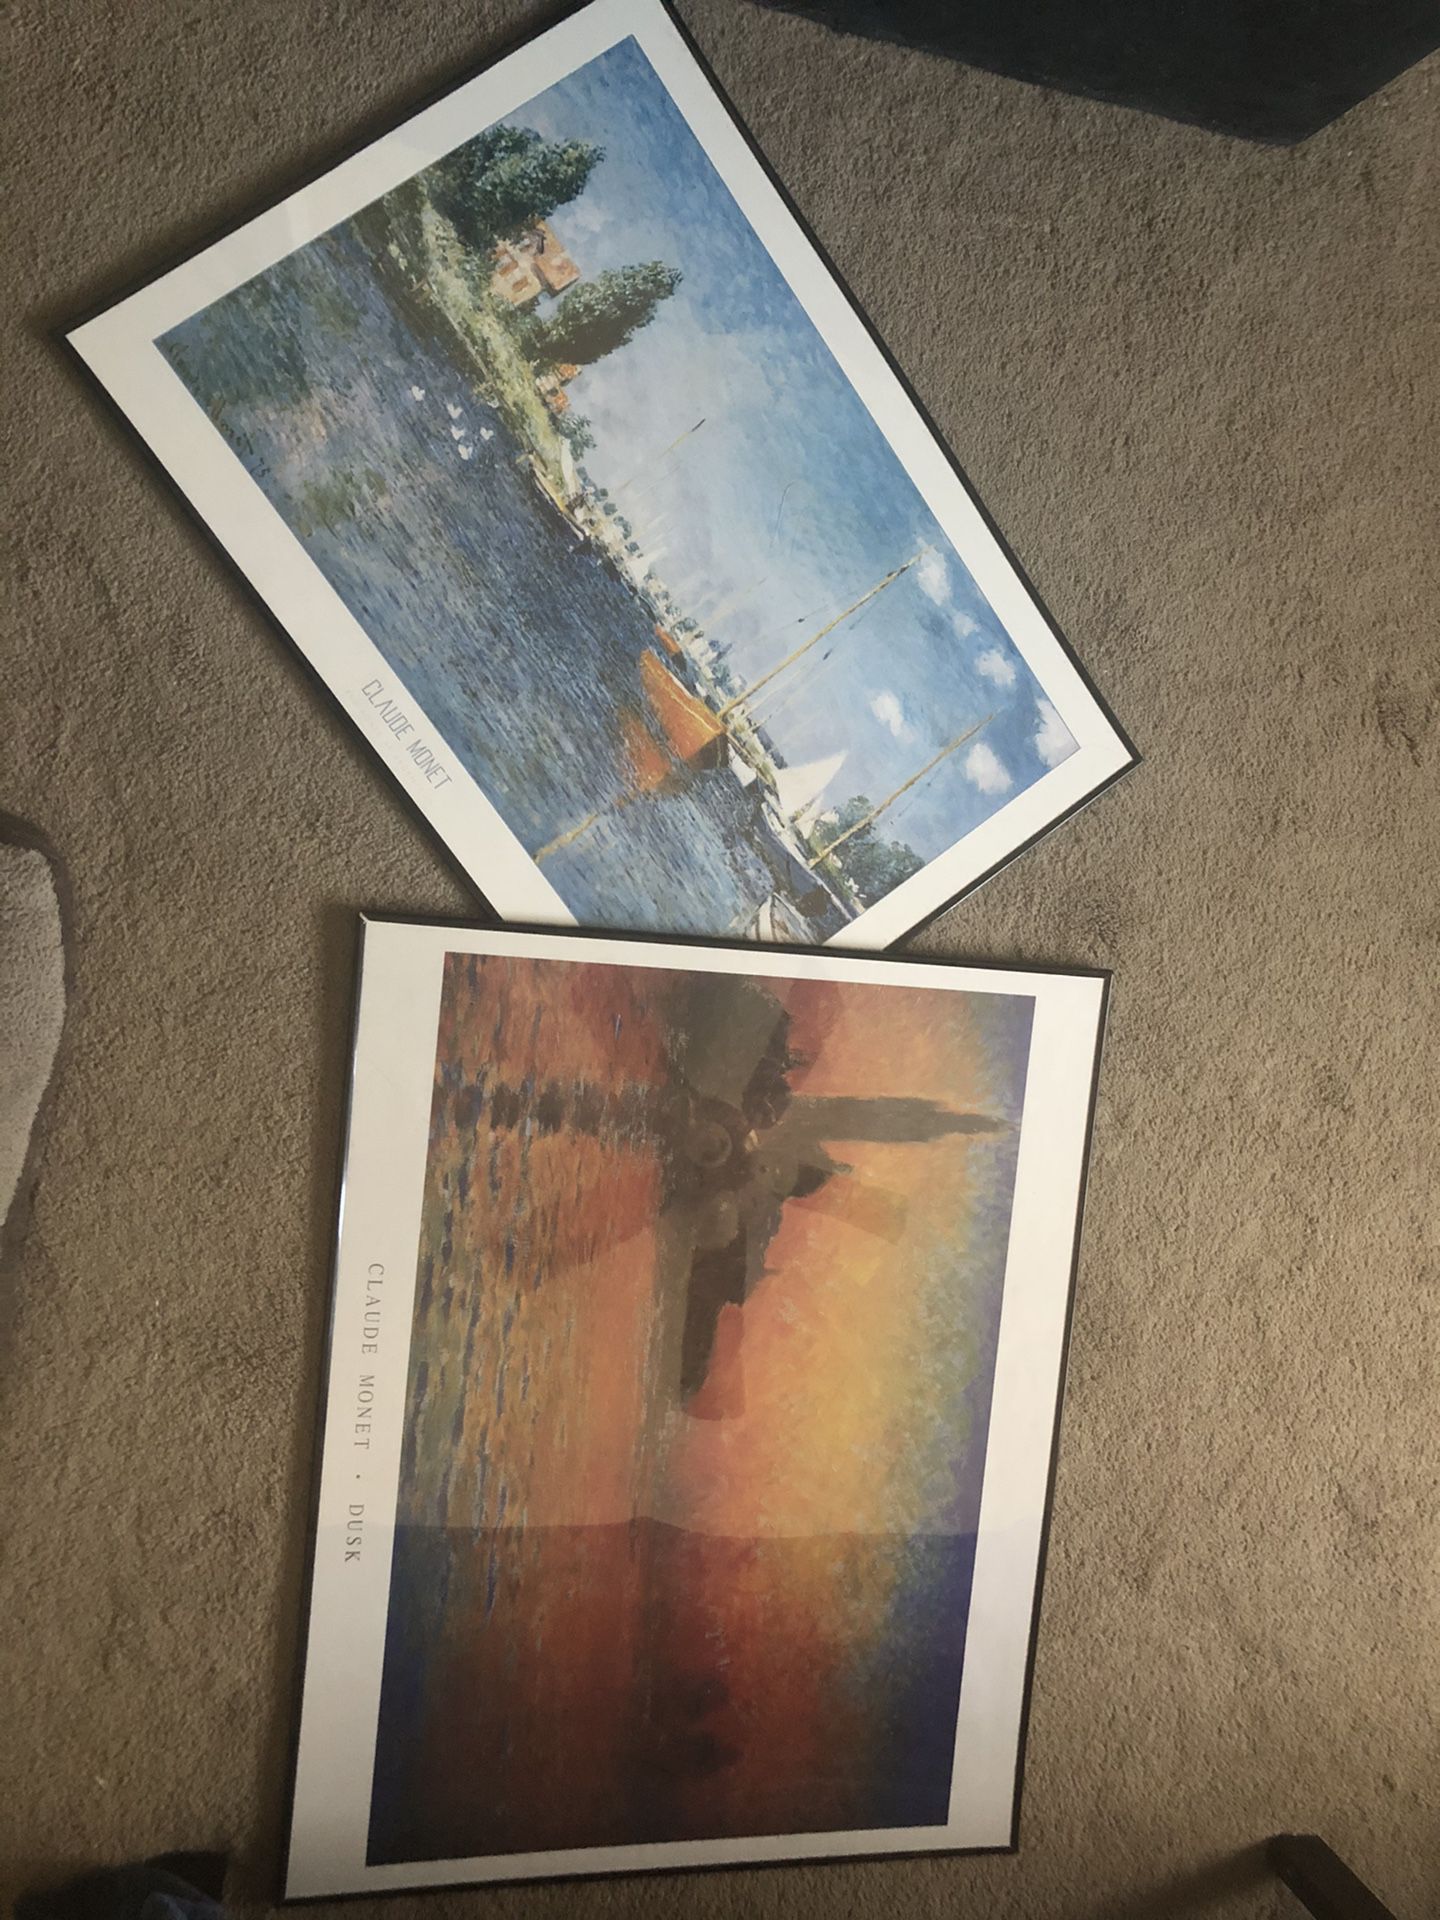 Framed Pictures